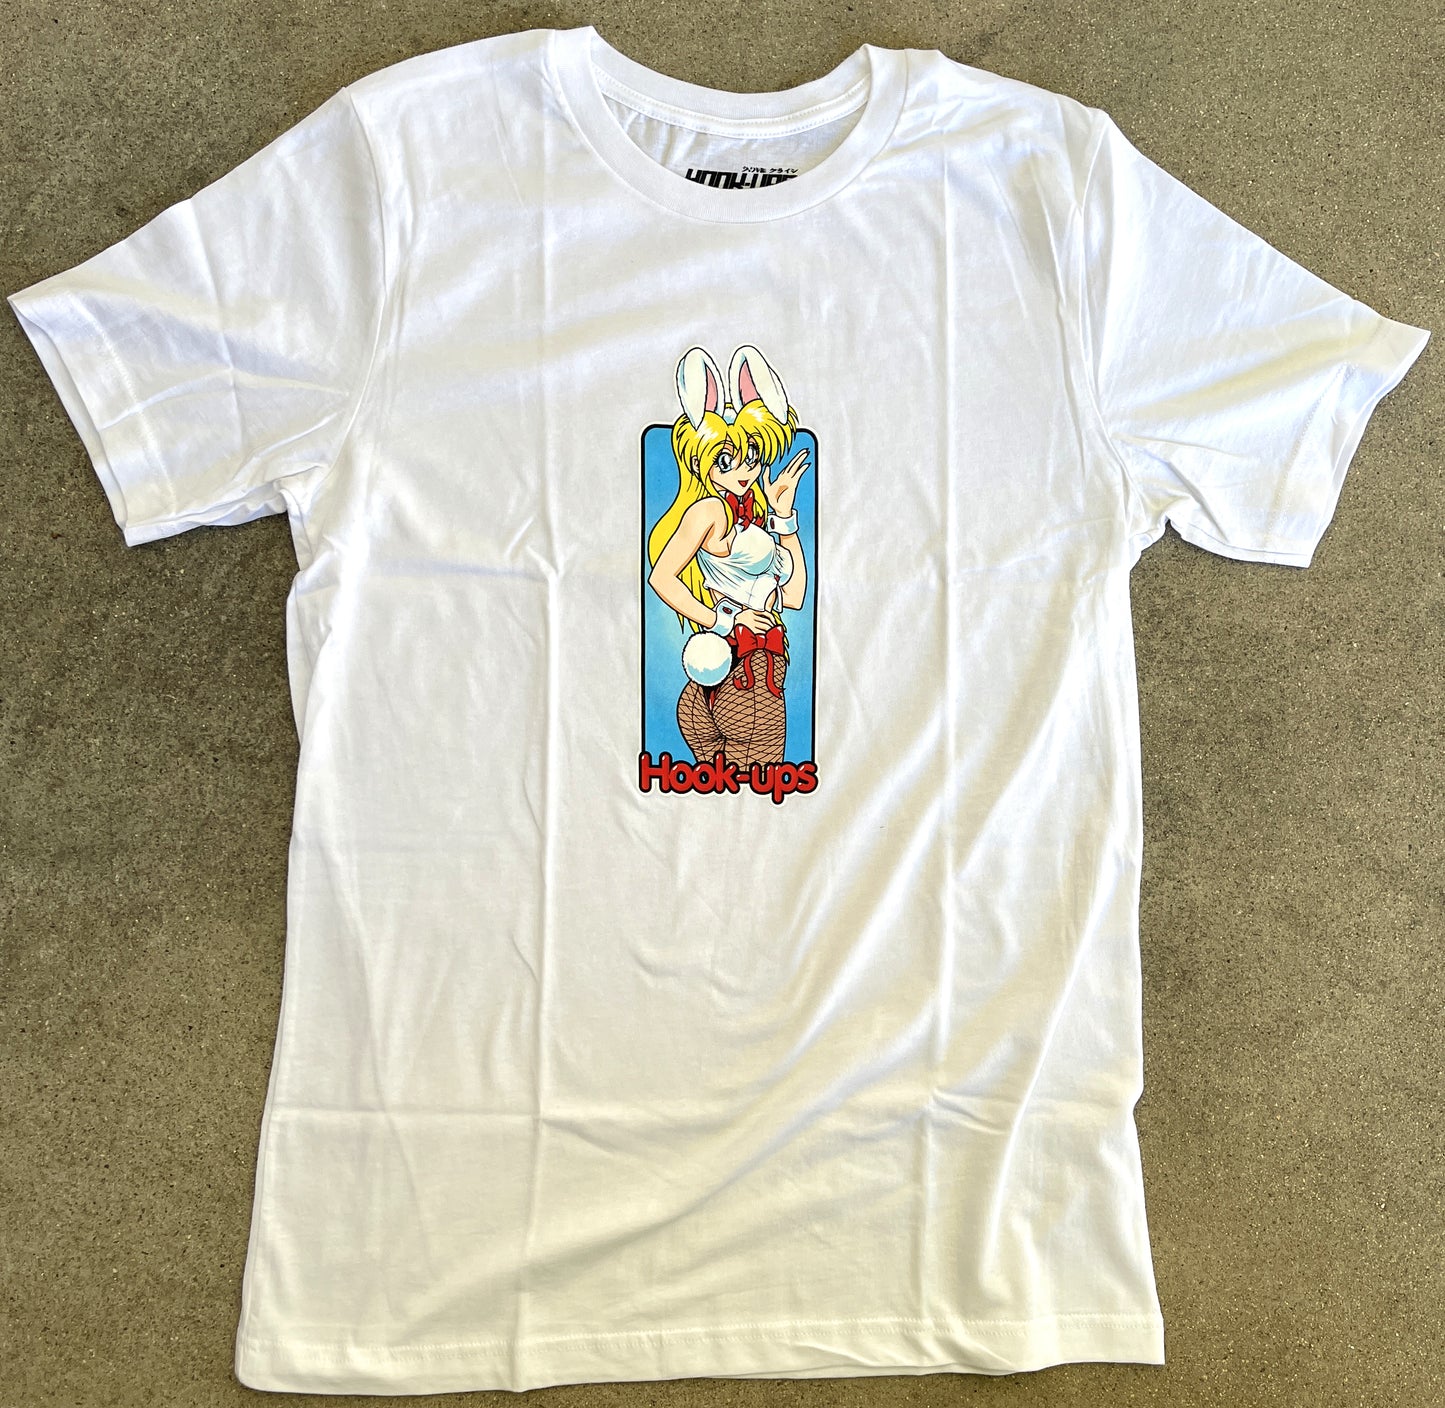 Bunny Girl T-shirt - WHITE